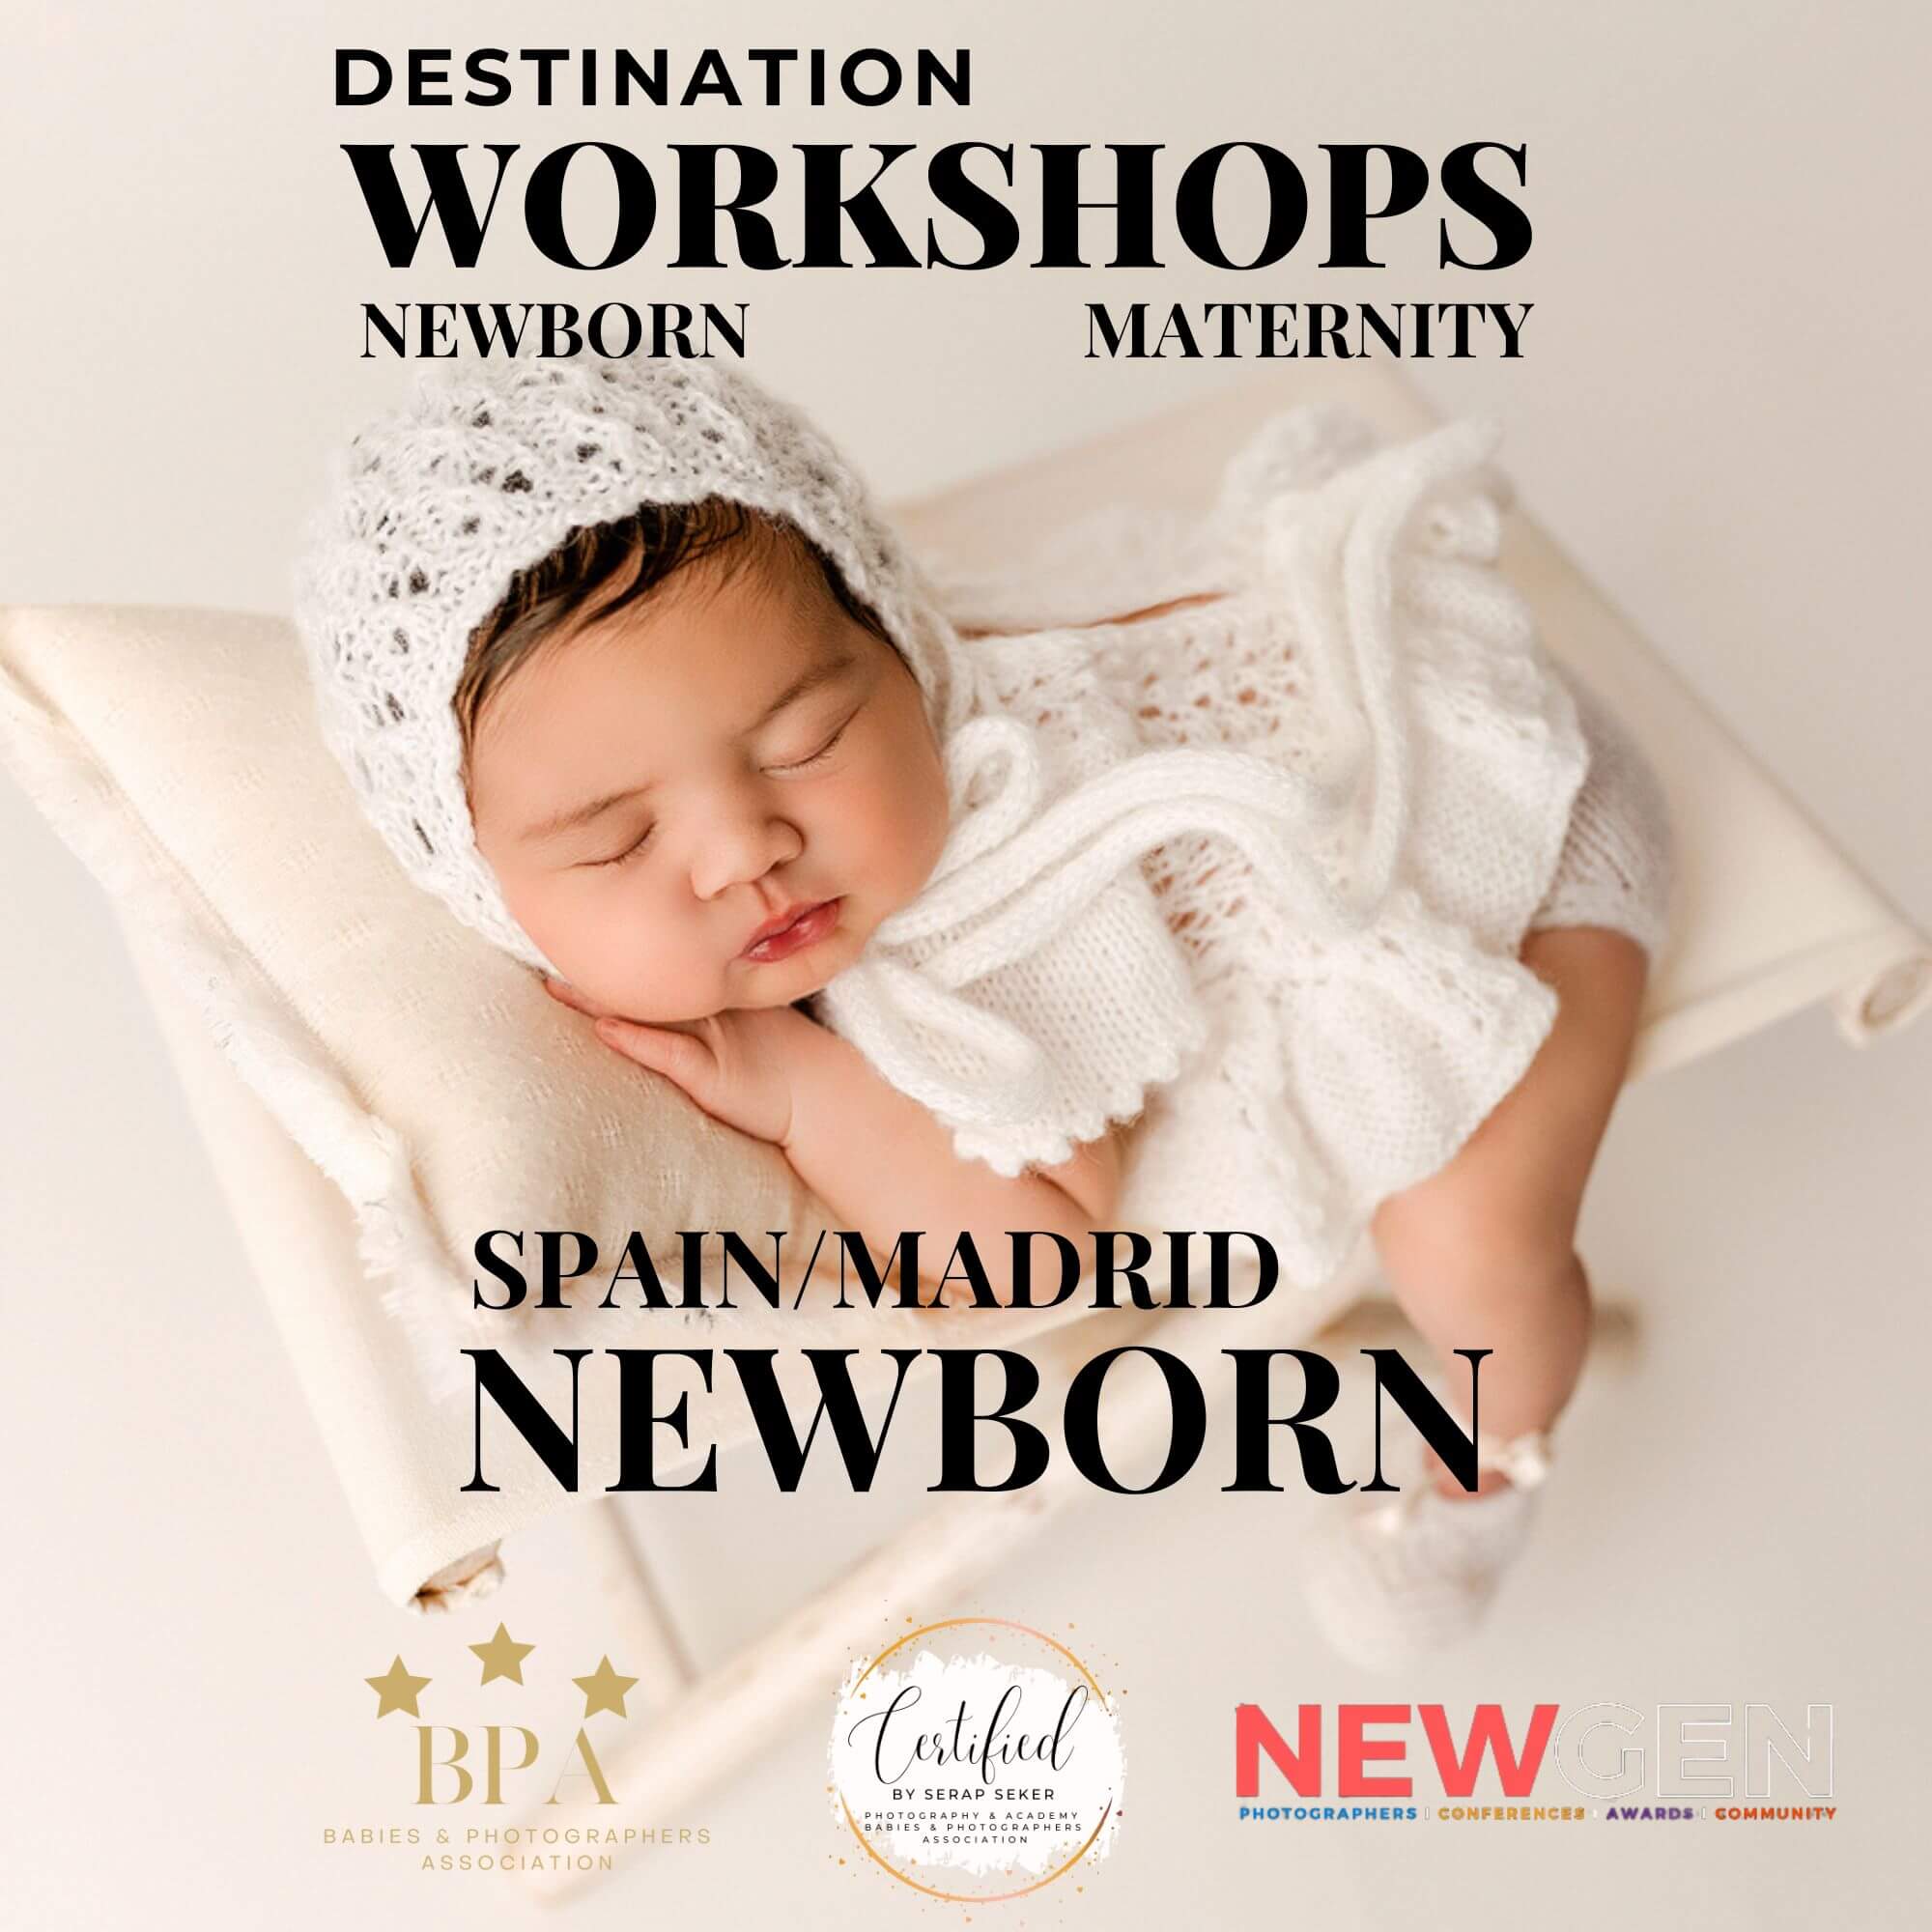 Spain/Madrid Workshop